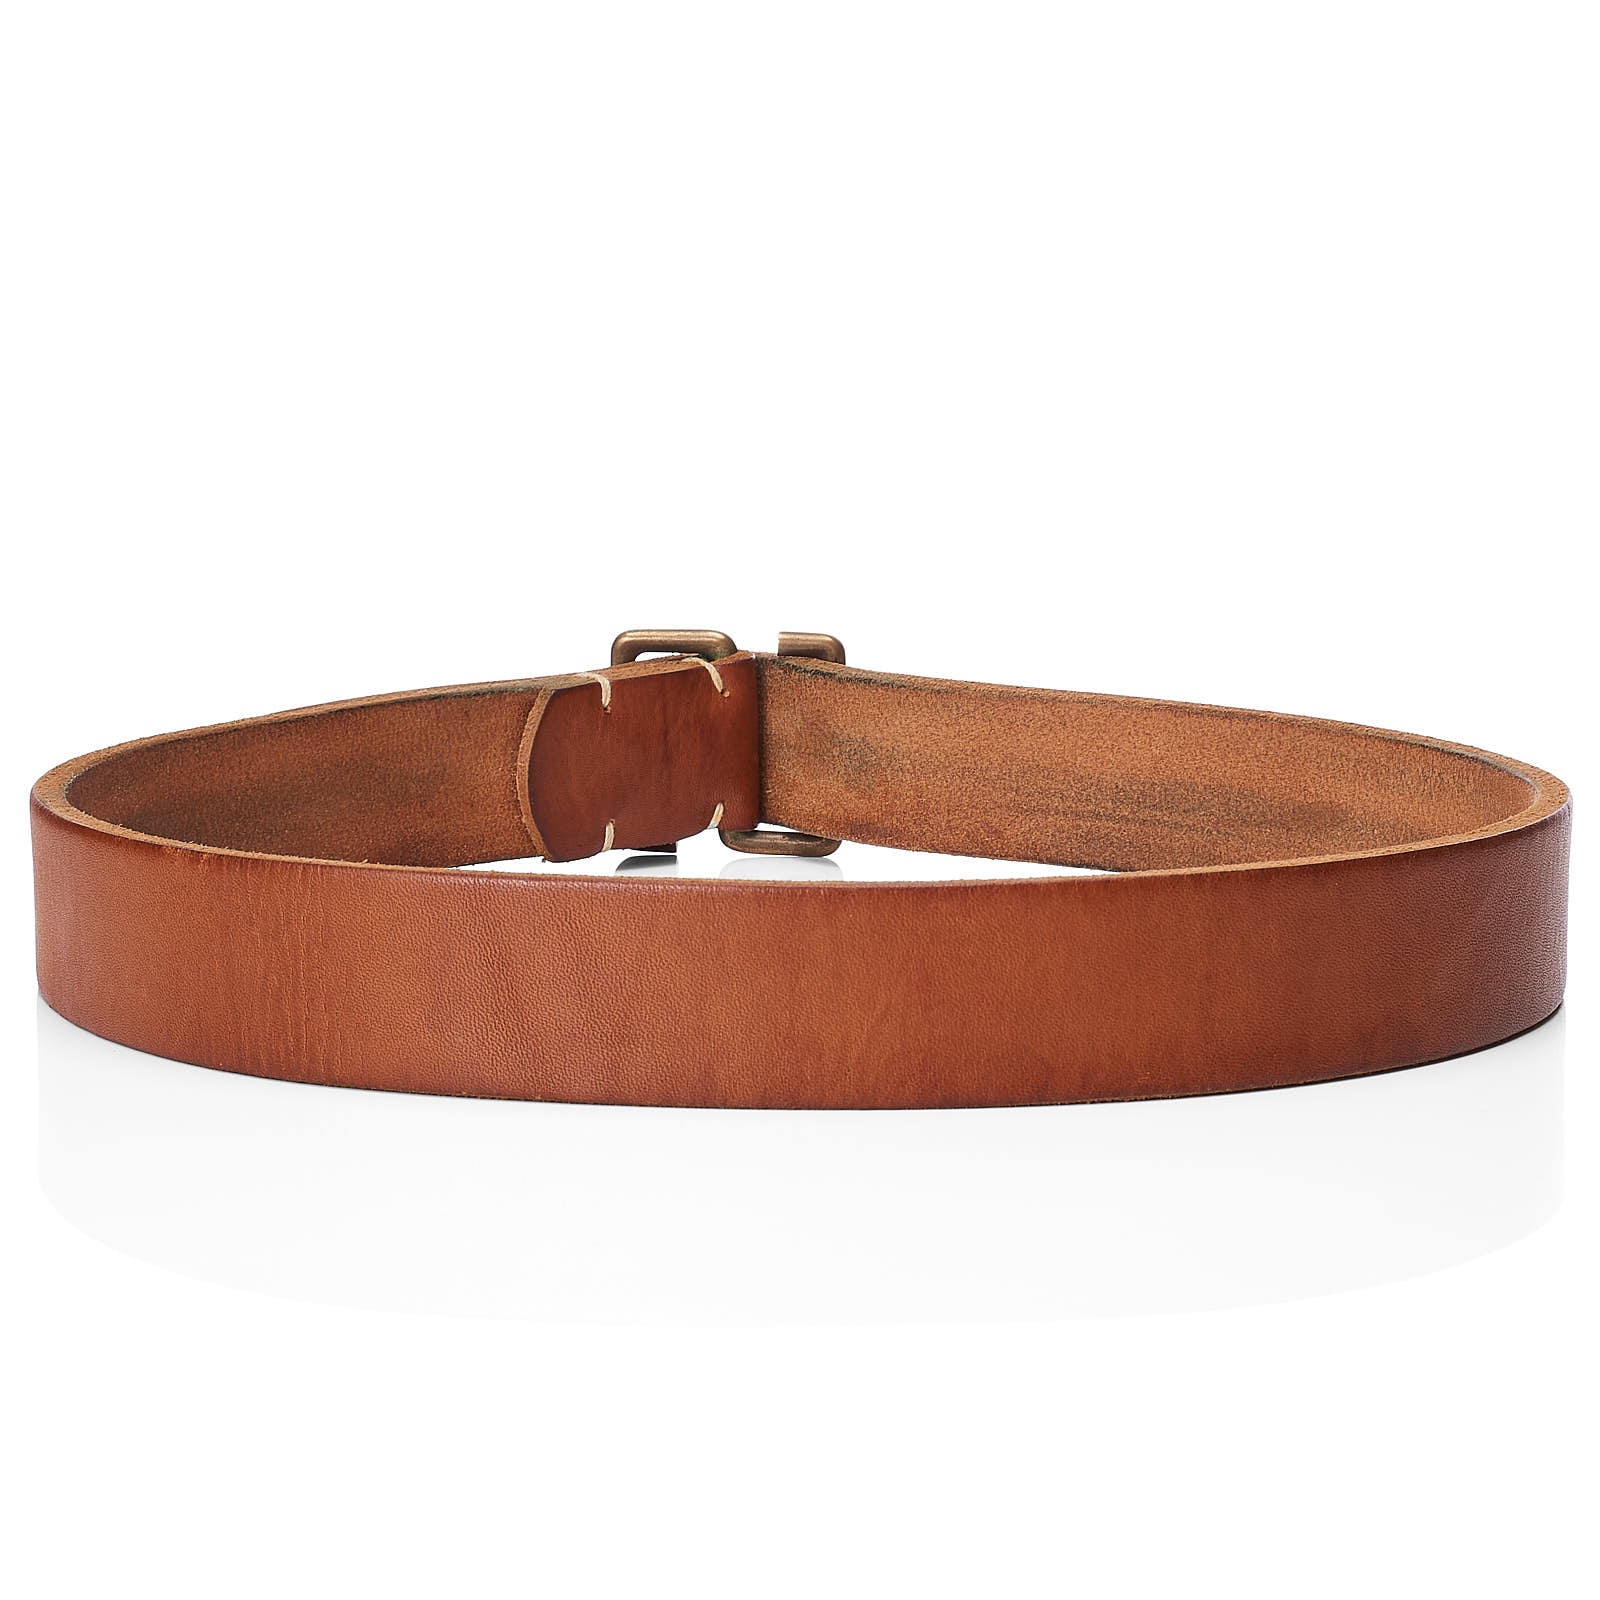 TENDER Co. S-Buckle Oak Bark Tanned Leather Belt Size 4 34"